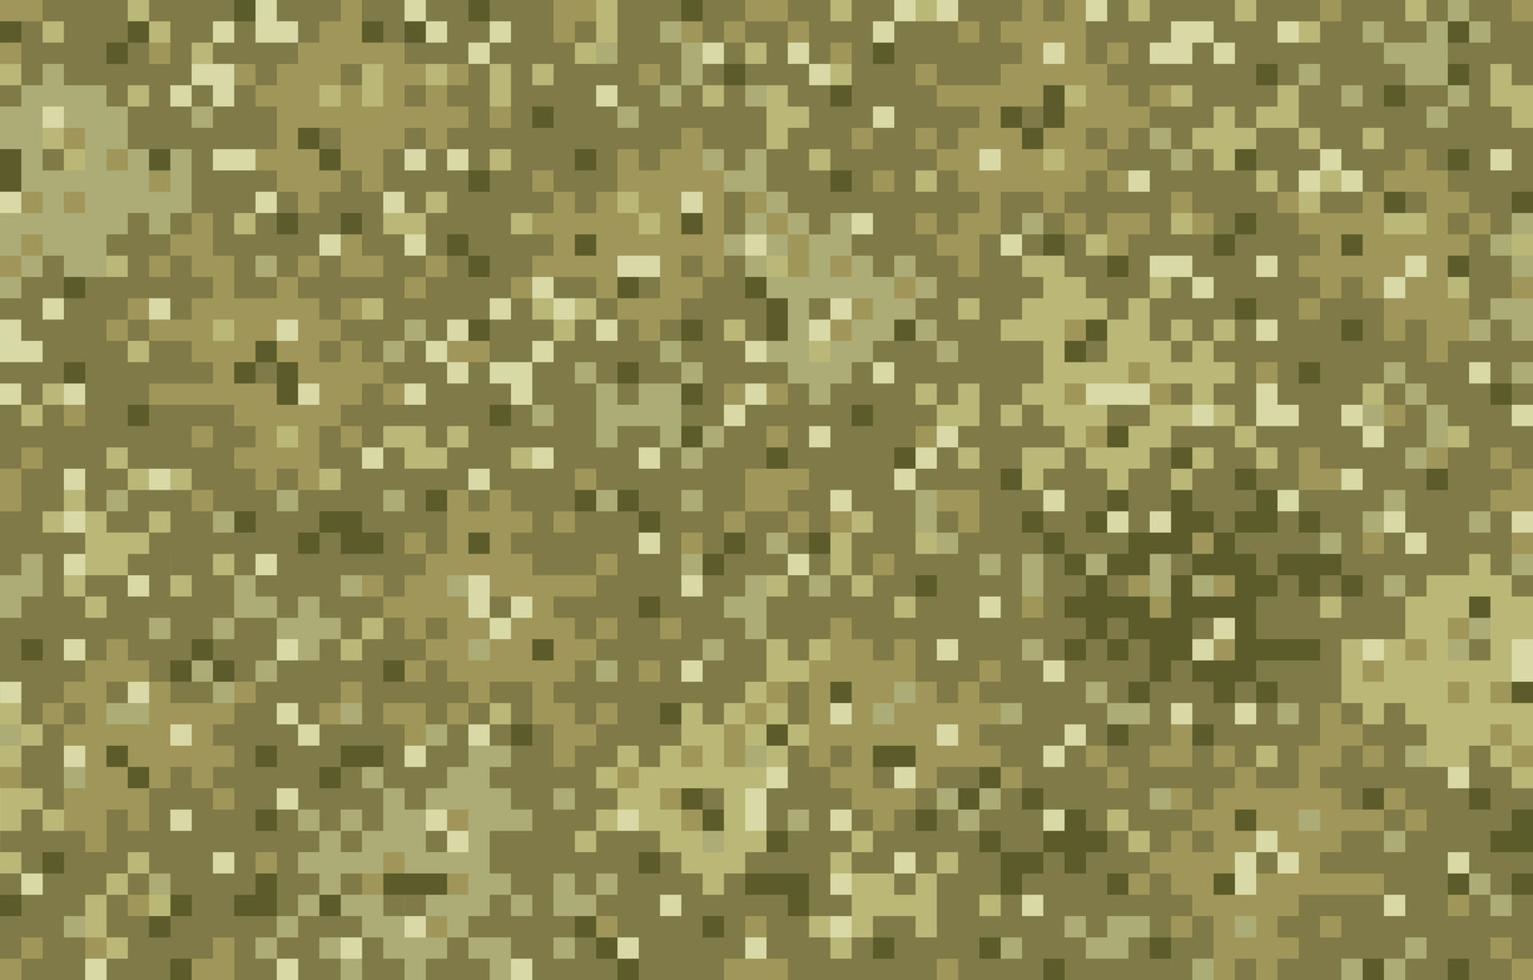 vektor sömlösa militära mönster i pixel stil.